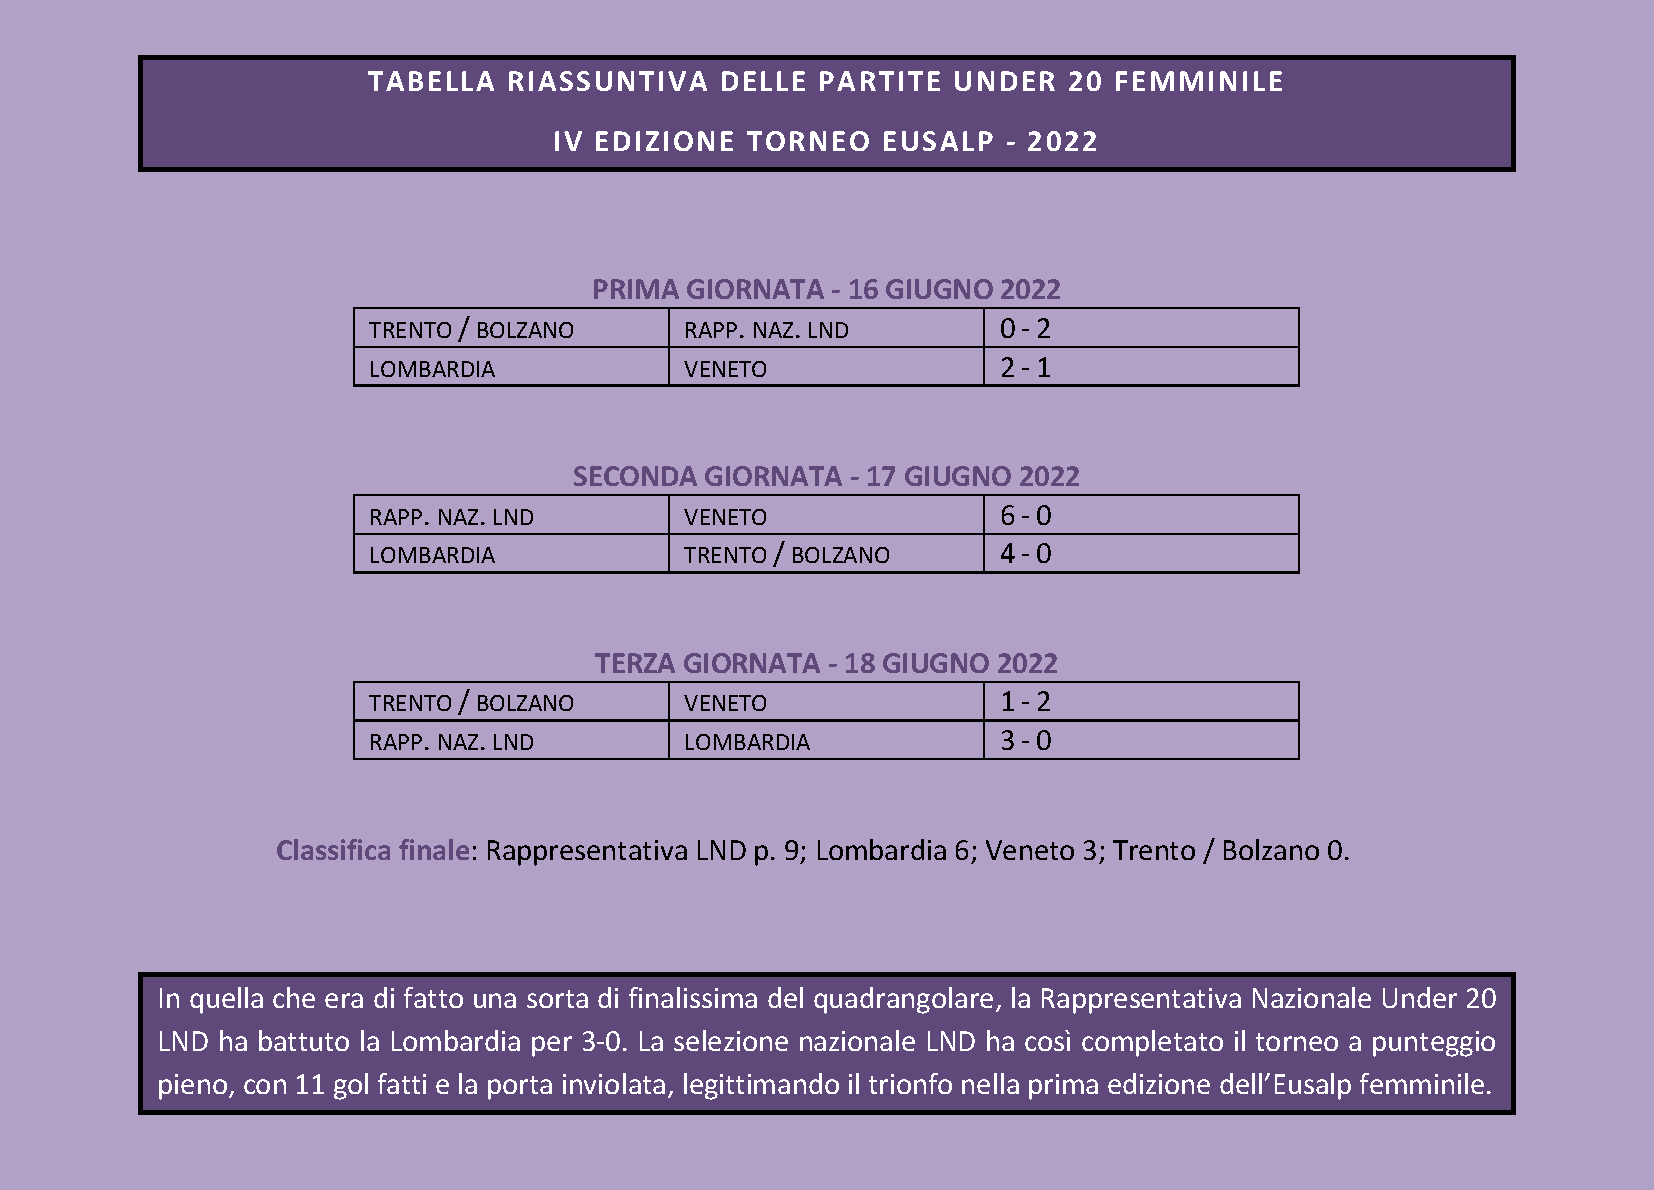 TABELLA RIASSUNTIVA DELLE PARTIRE UNDER 20 FEMMINILE